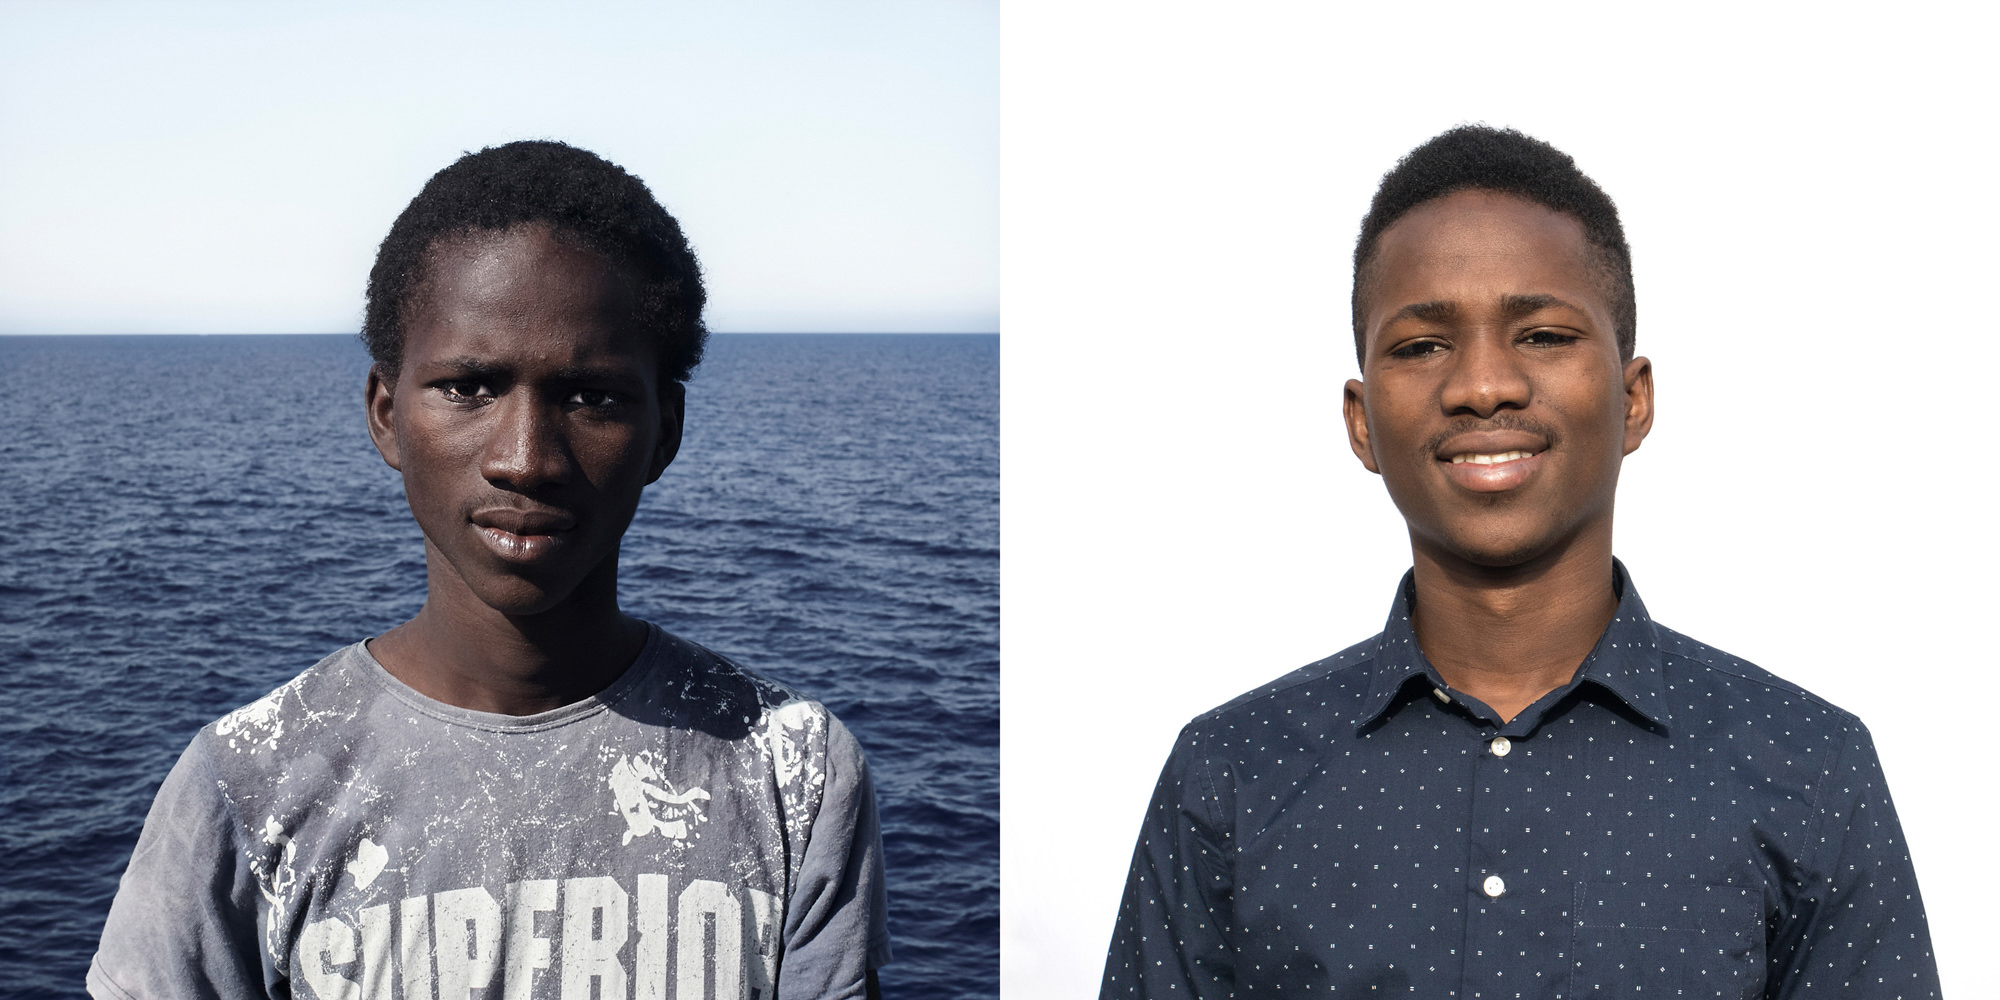 ギニア・コナクリ出身のアルファ。（1999年生）。<br>
左：2016年8月1日、地中海の救助船上で撮影。<br>
右：2019年2月8日、イタリア・ラマッカで撮影。<br>
© César Dezfuli